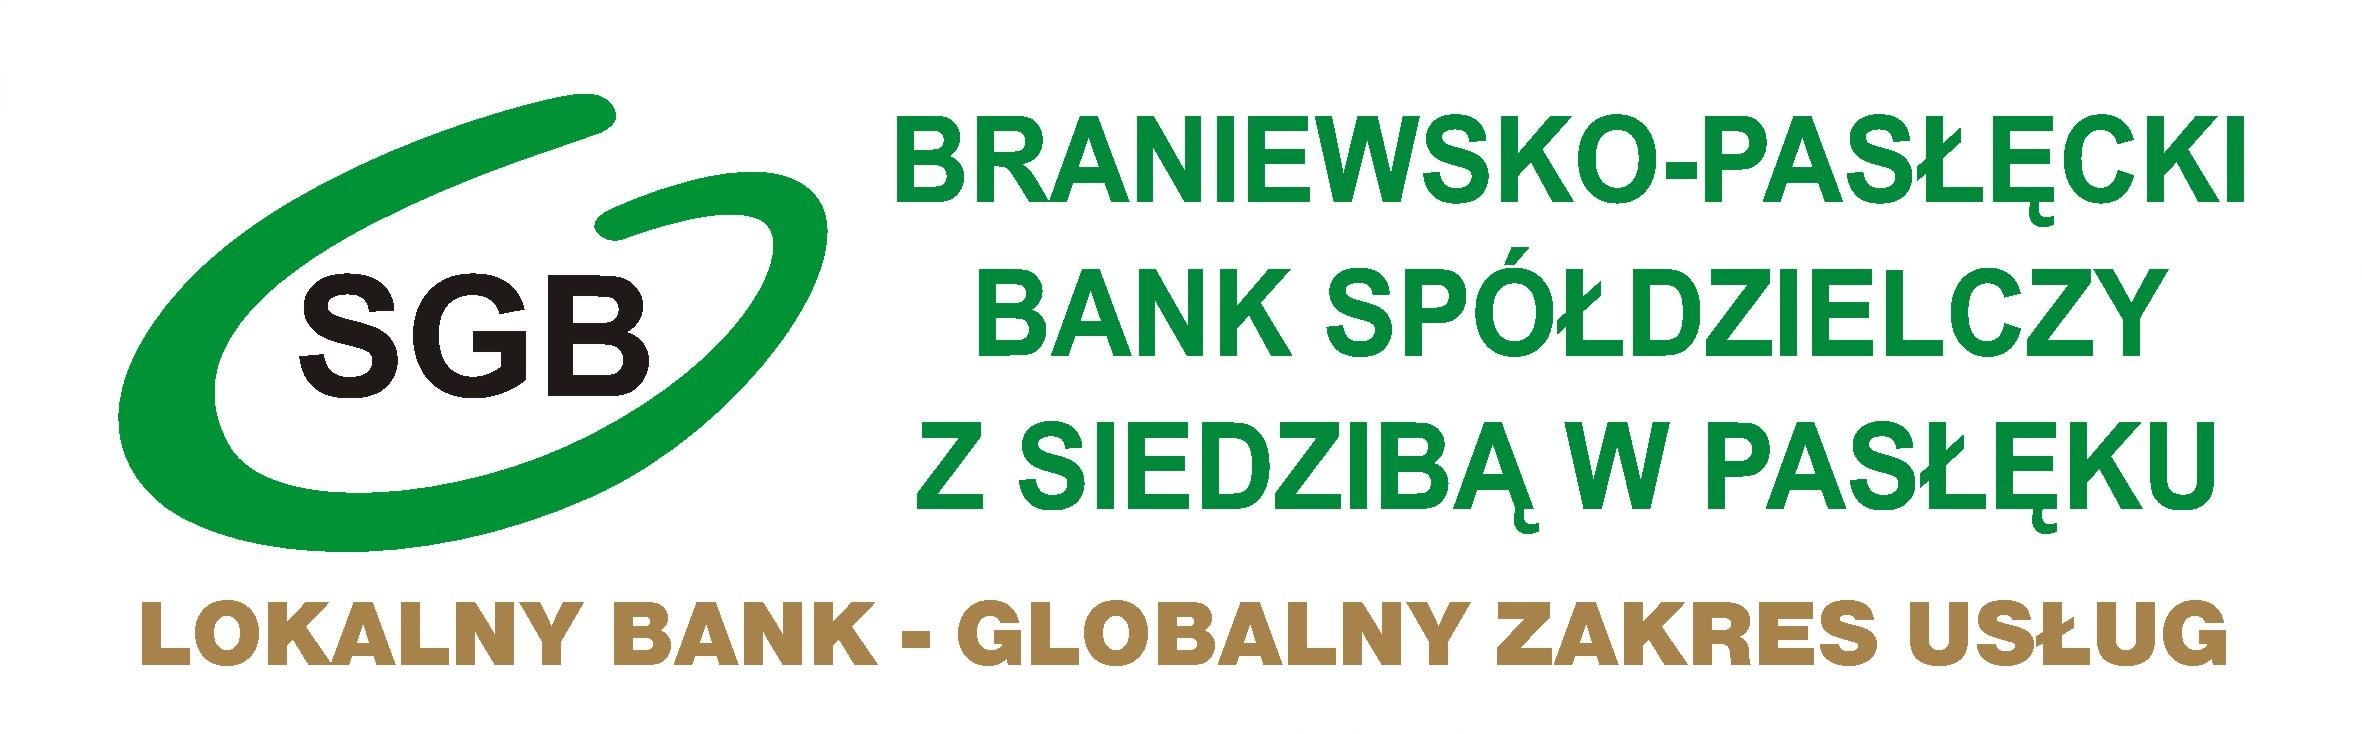 Konto TAK! - Braniewsko-Pasłęcki Bank Spółdzielczy z siedzibą w Pasłęku